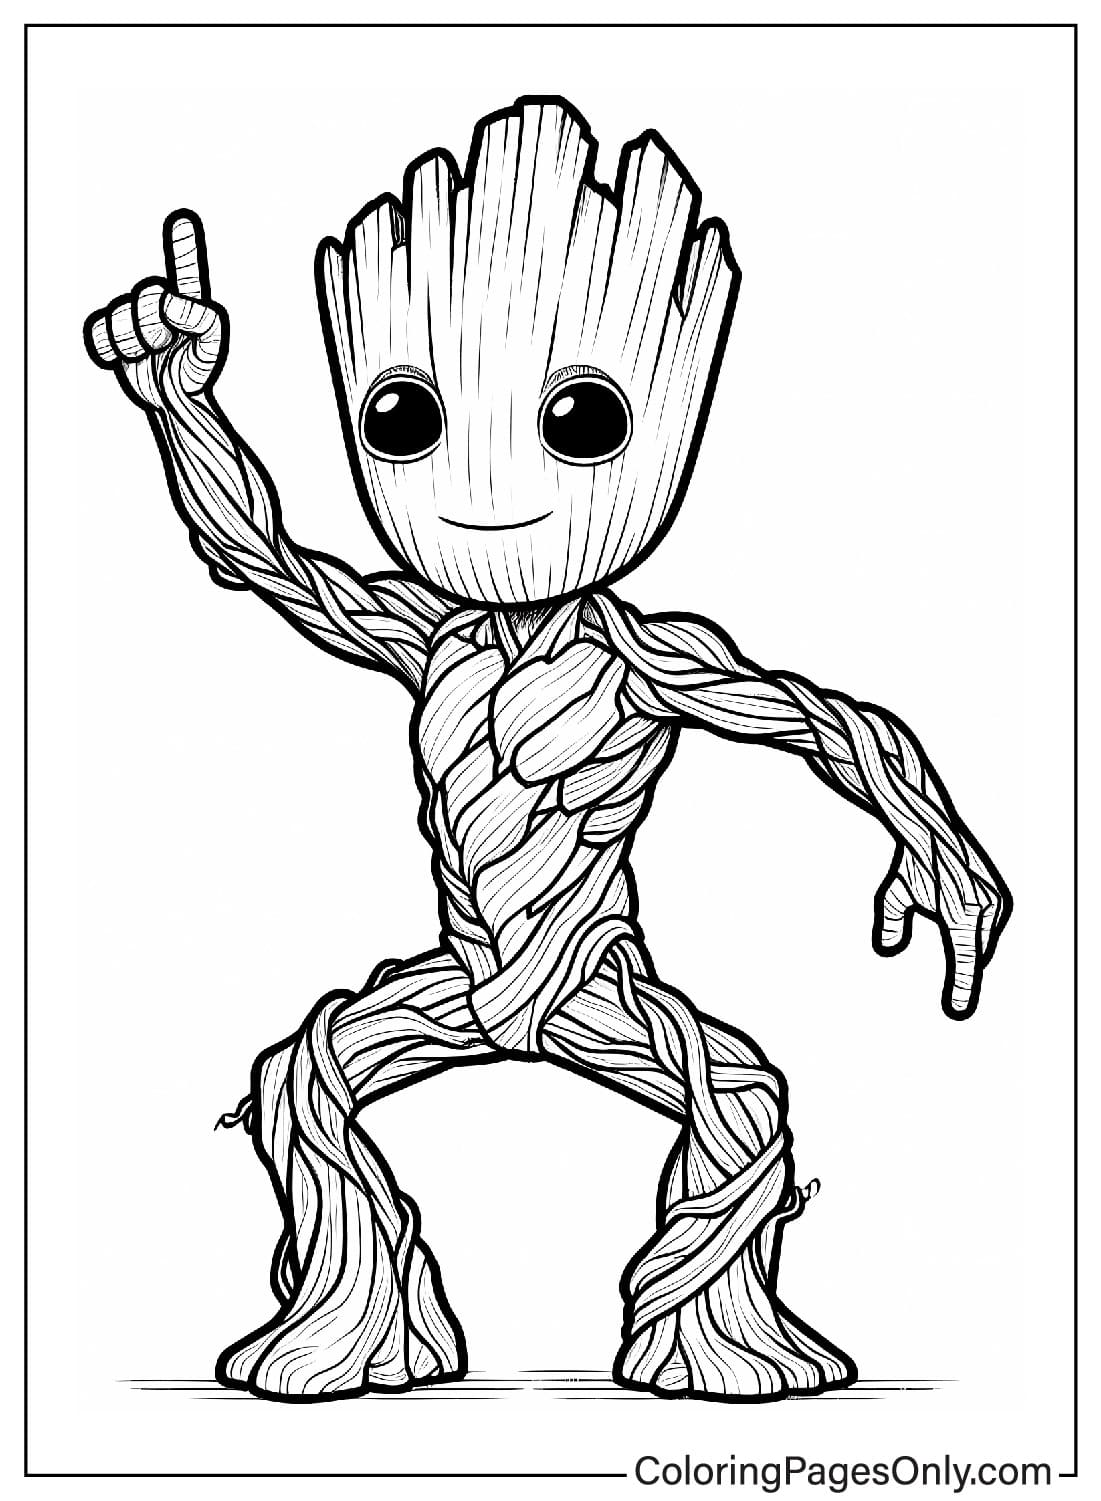 Imagens da página para colorir do Groot do Groot